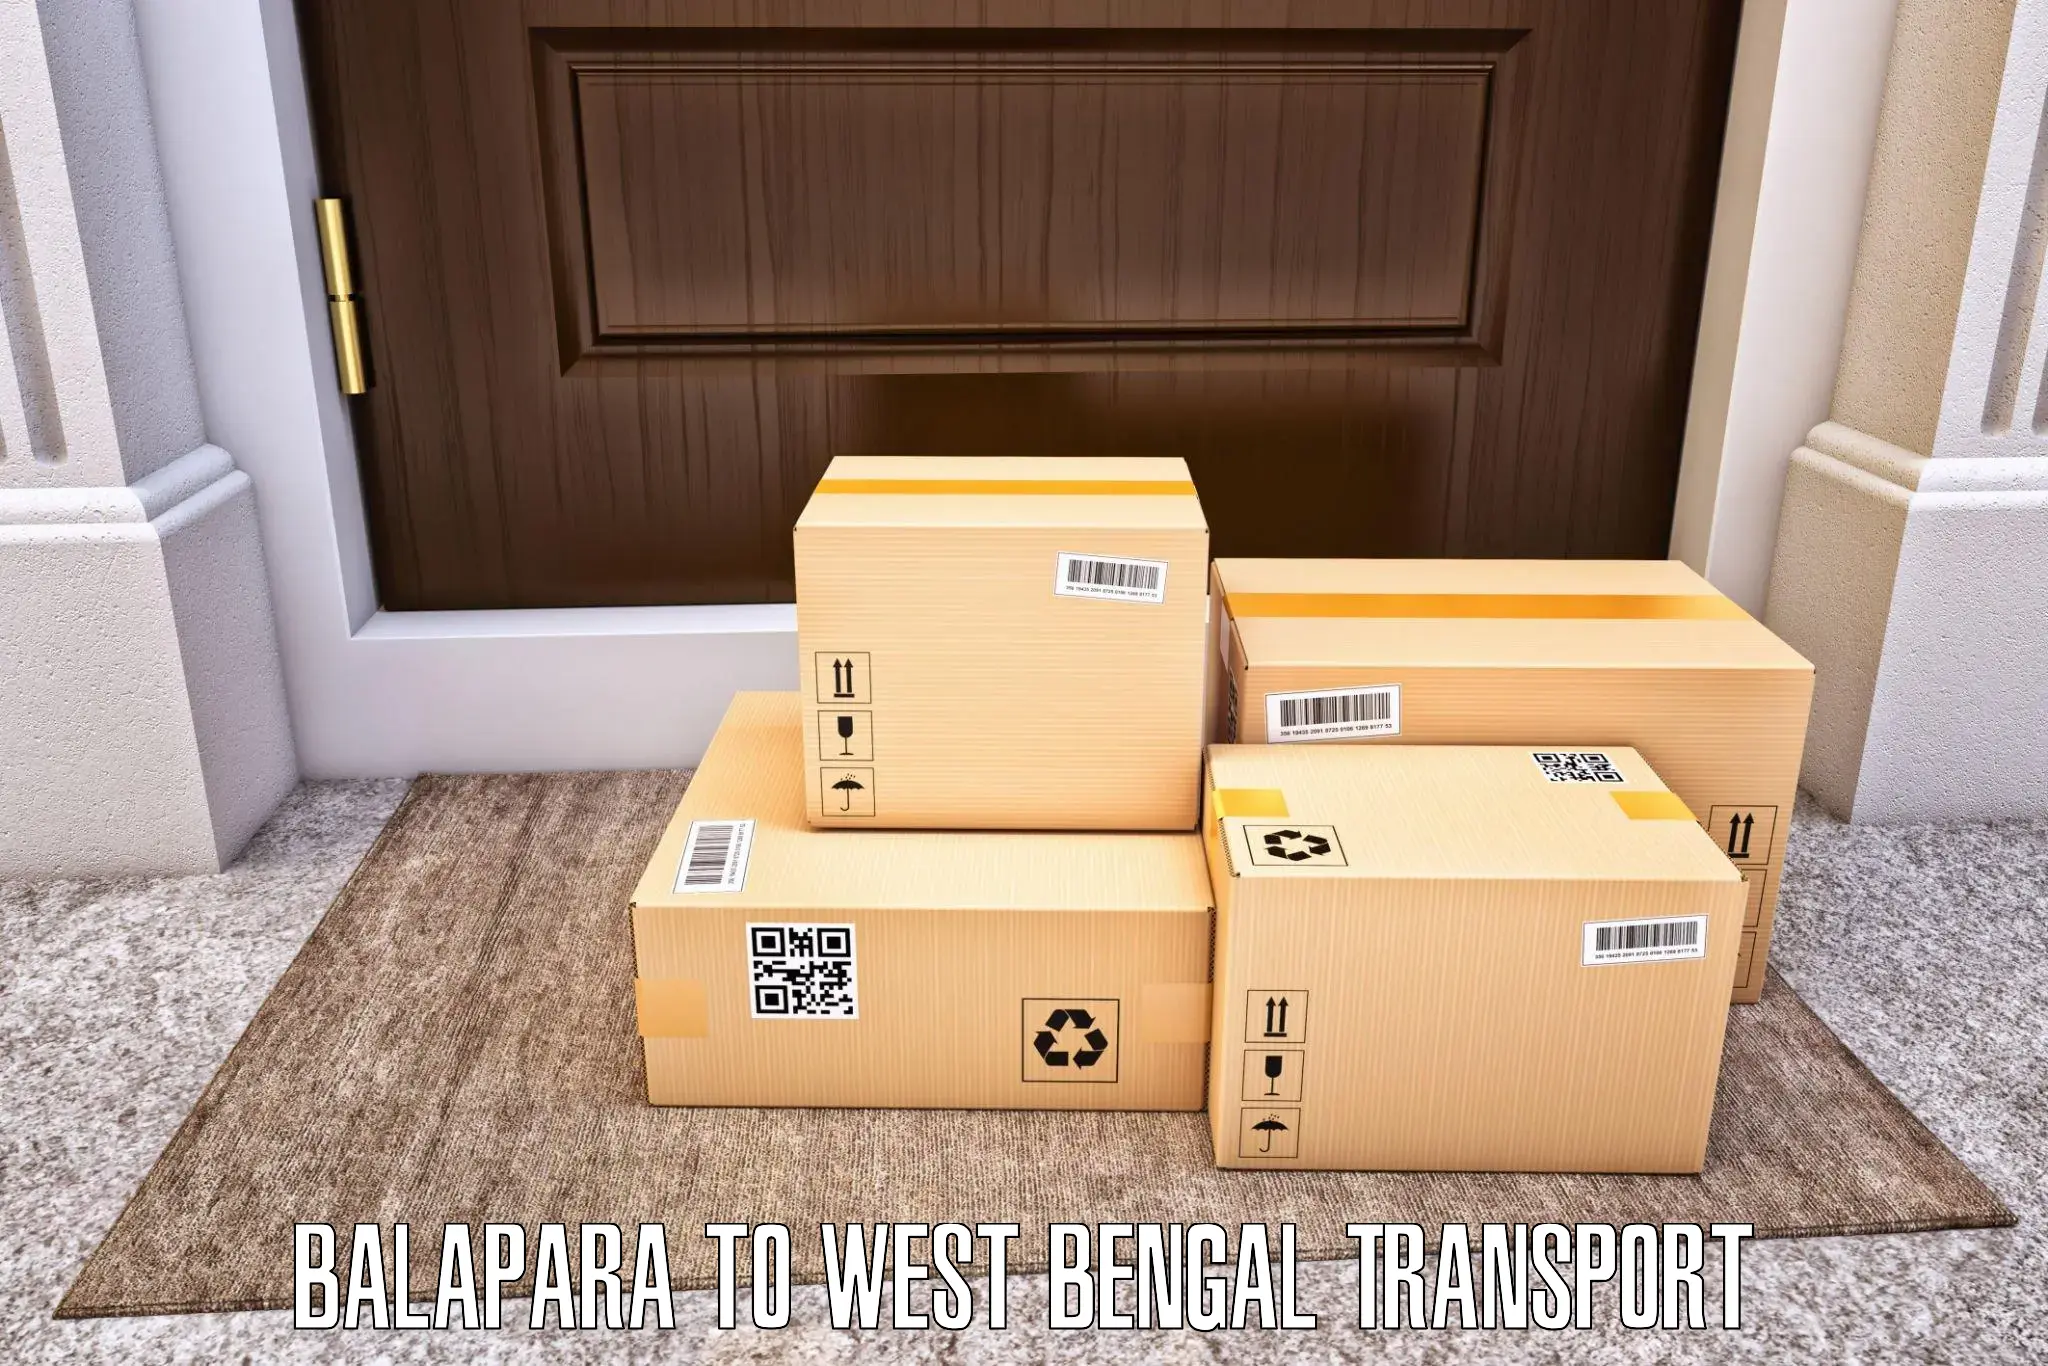 Vehicle transport services Balapara to Habra